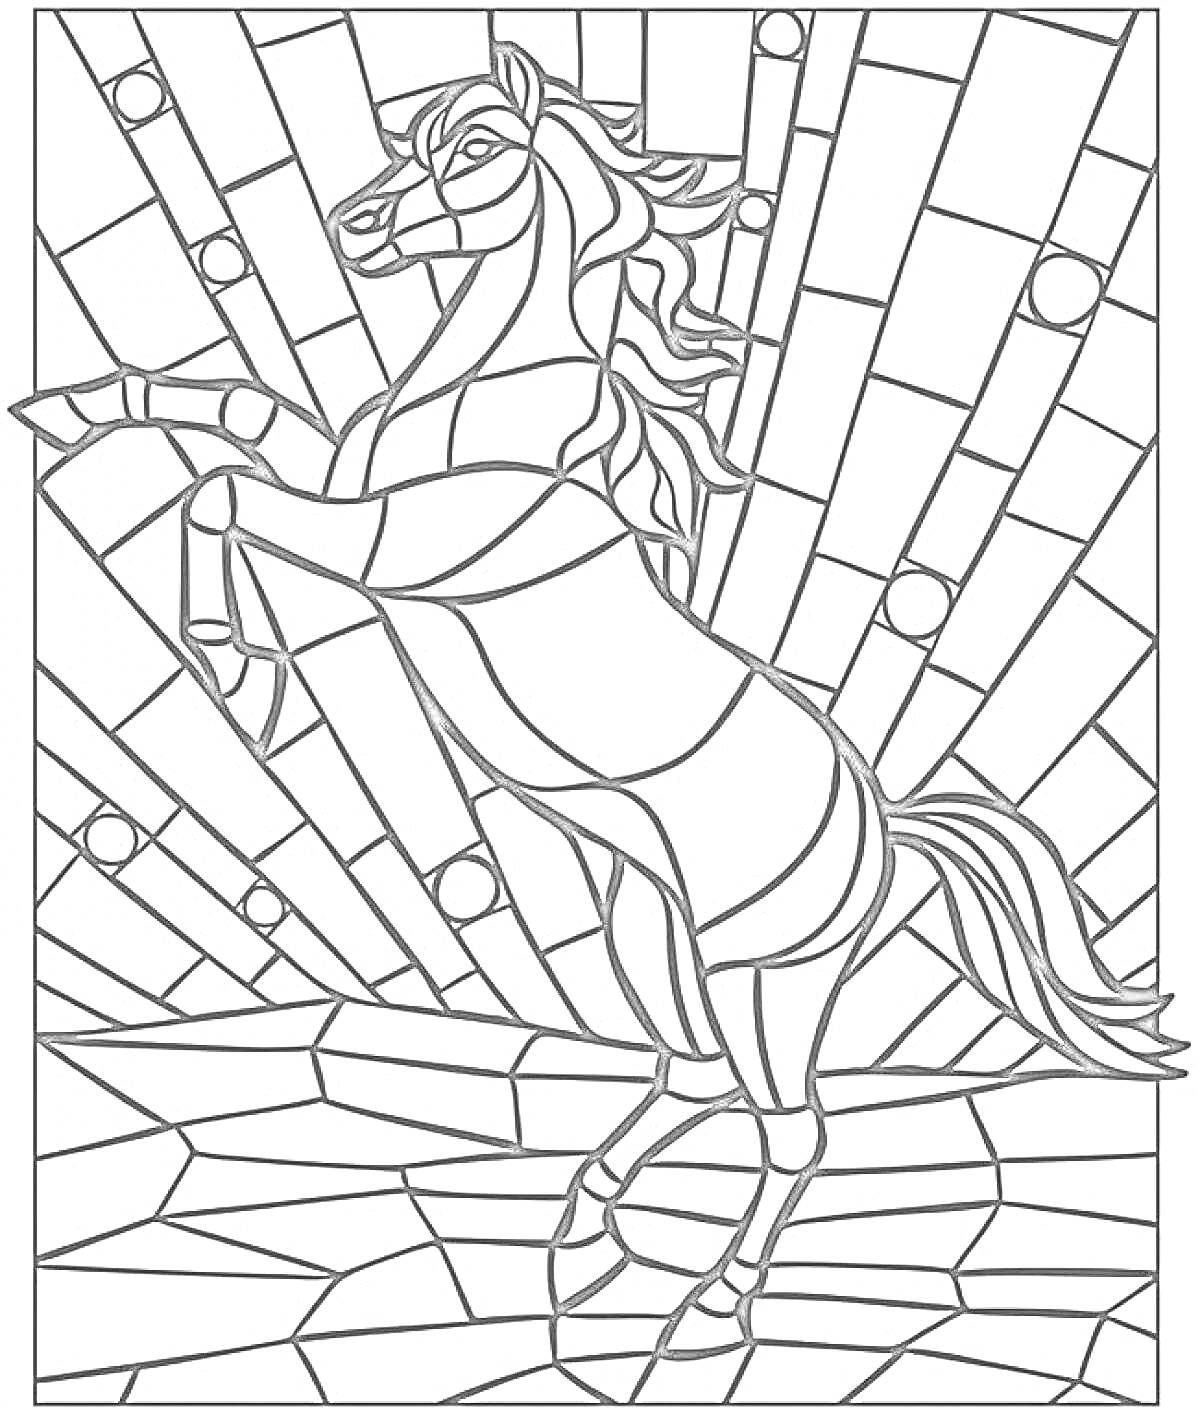 Раскраска Лошадь в мозаике на фоне лучей